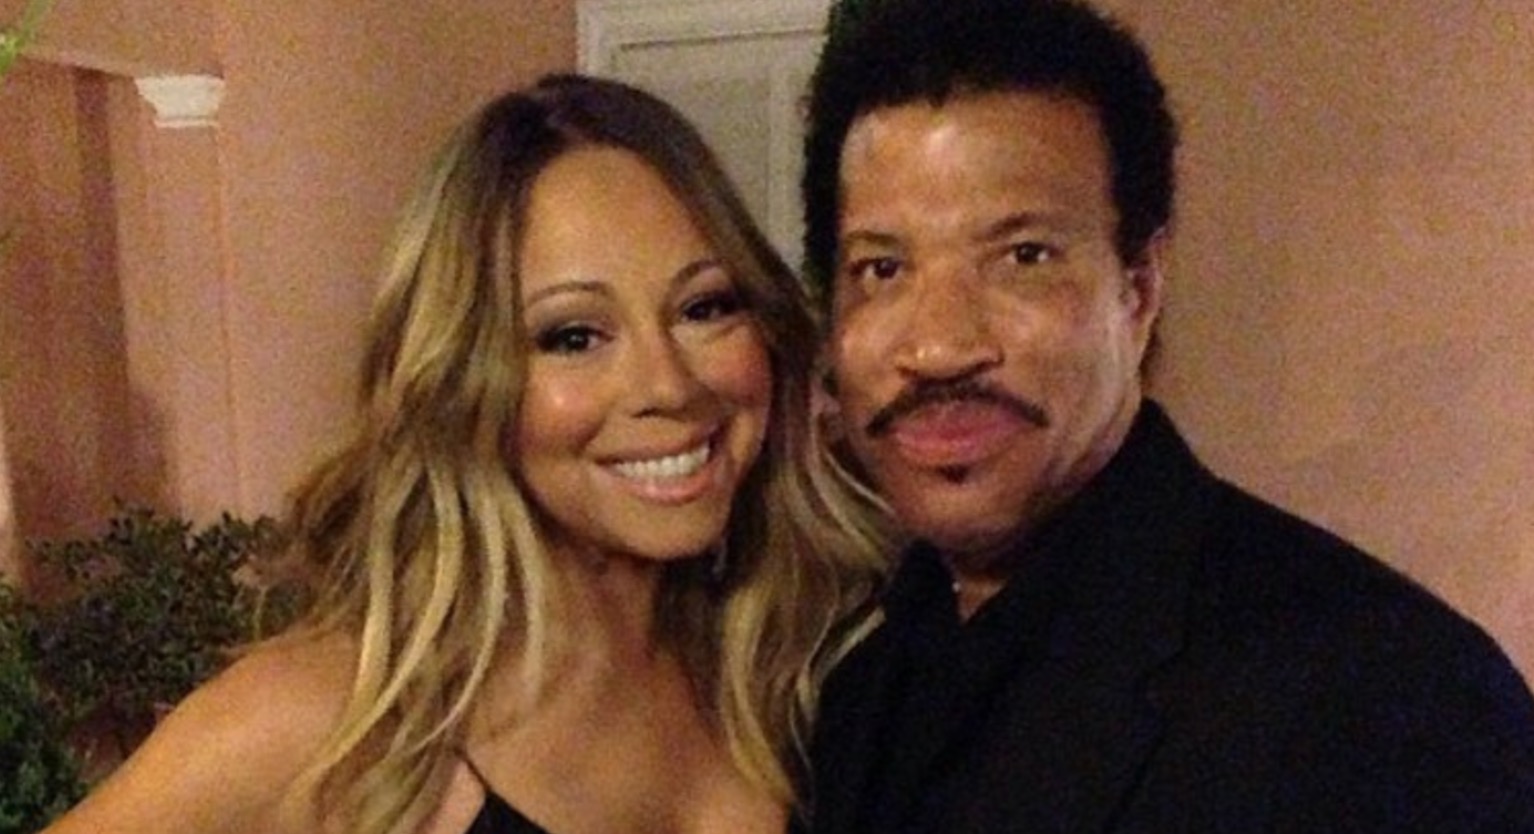  La gira de Lionel Richie y Mariah Carey se «aplaza» después de rumores de pocas ventas